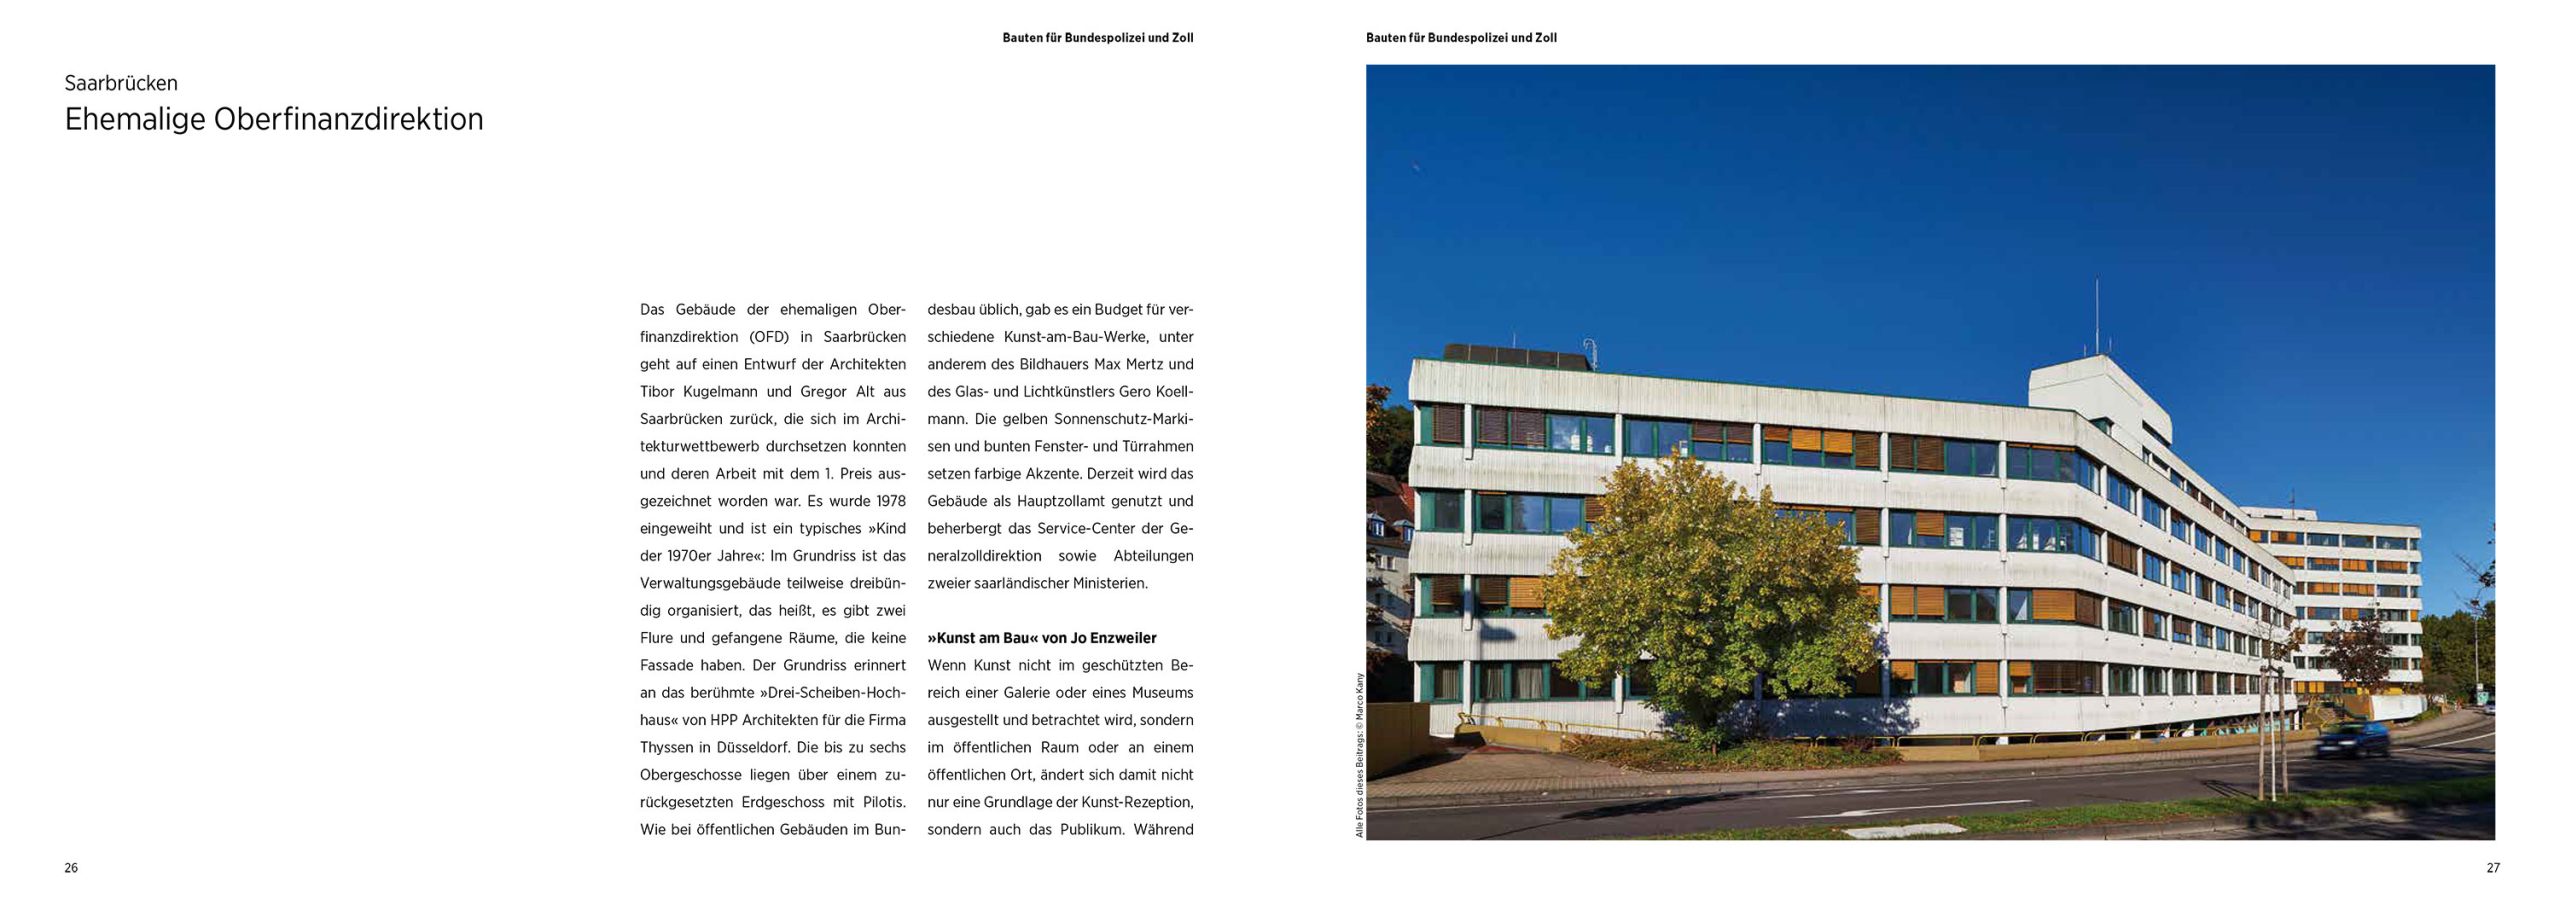 Buchgestaltung von Marco Kany: Bauen für den Bund im Saarland